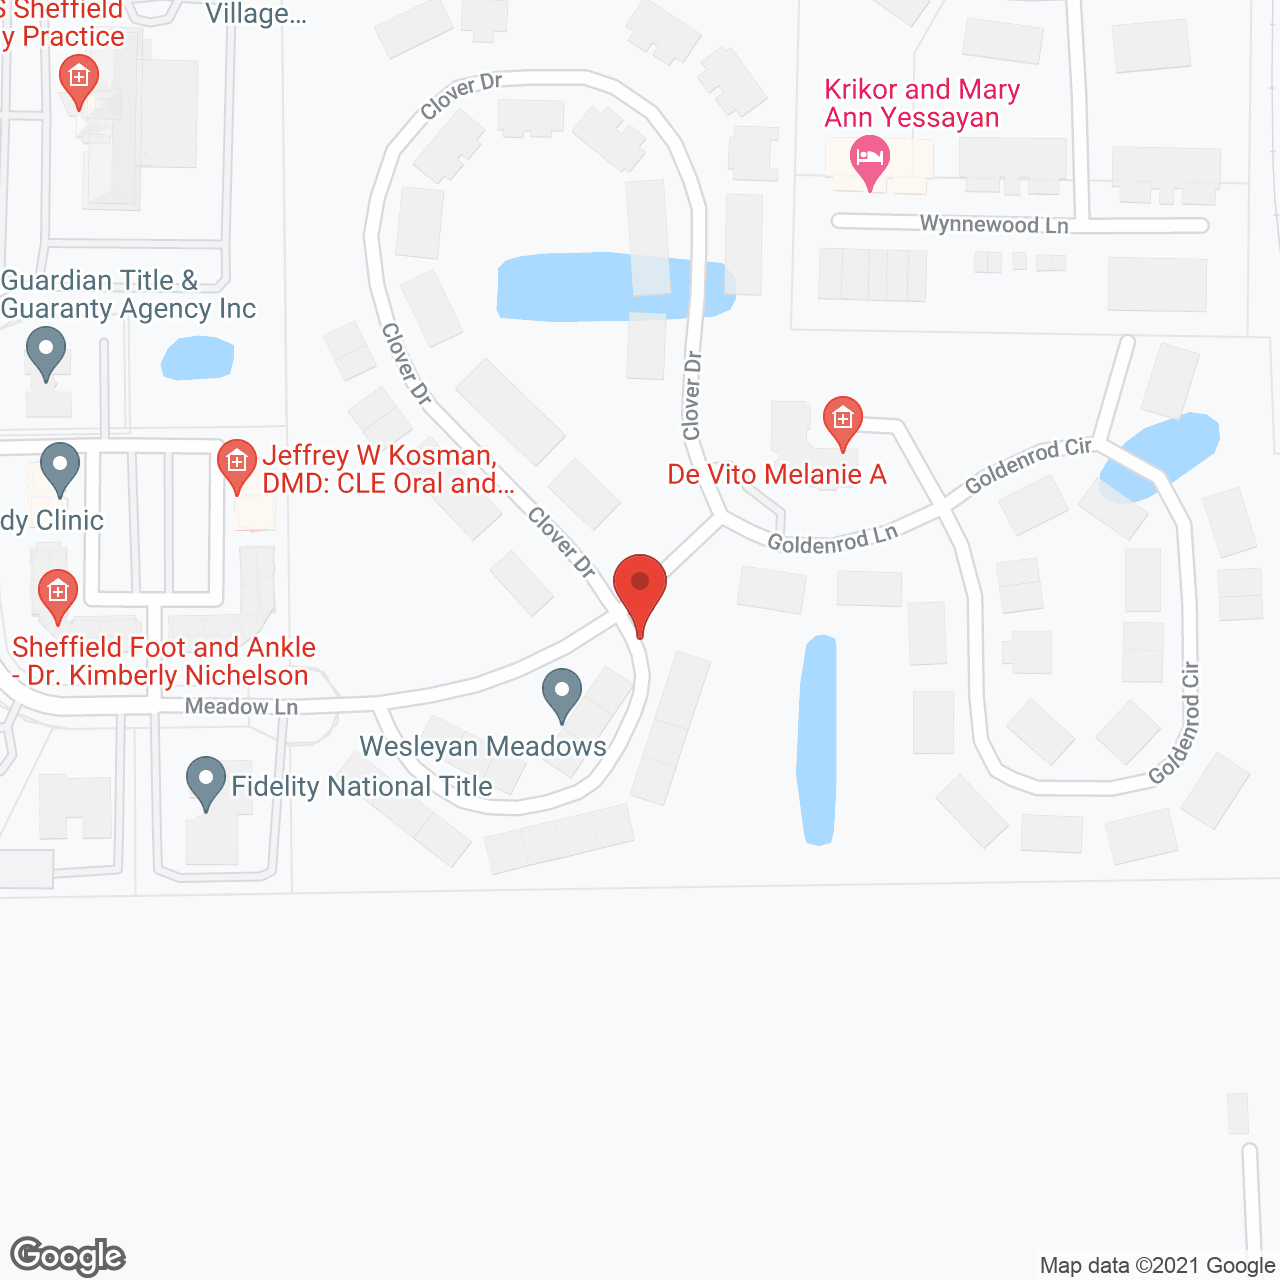 Wesleyan Meadows in google map